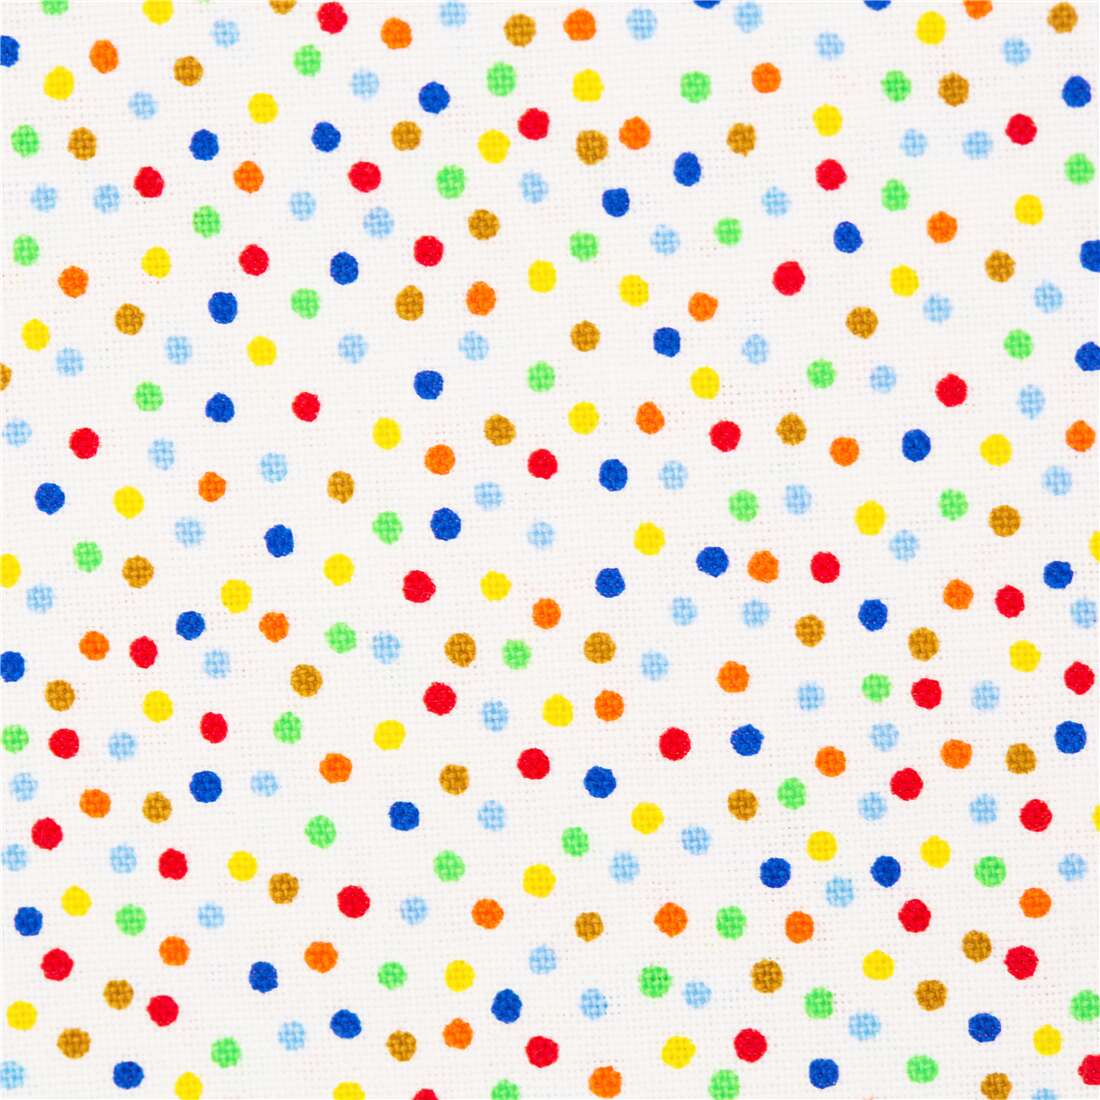 green and blue polka dots